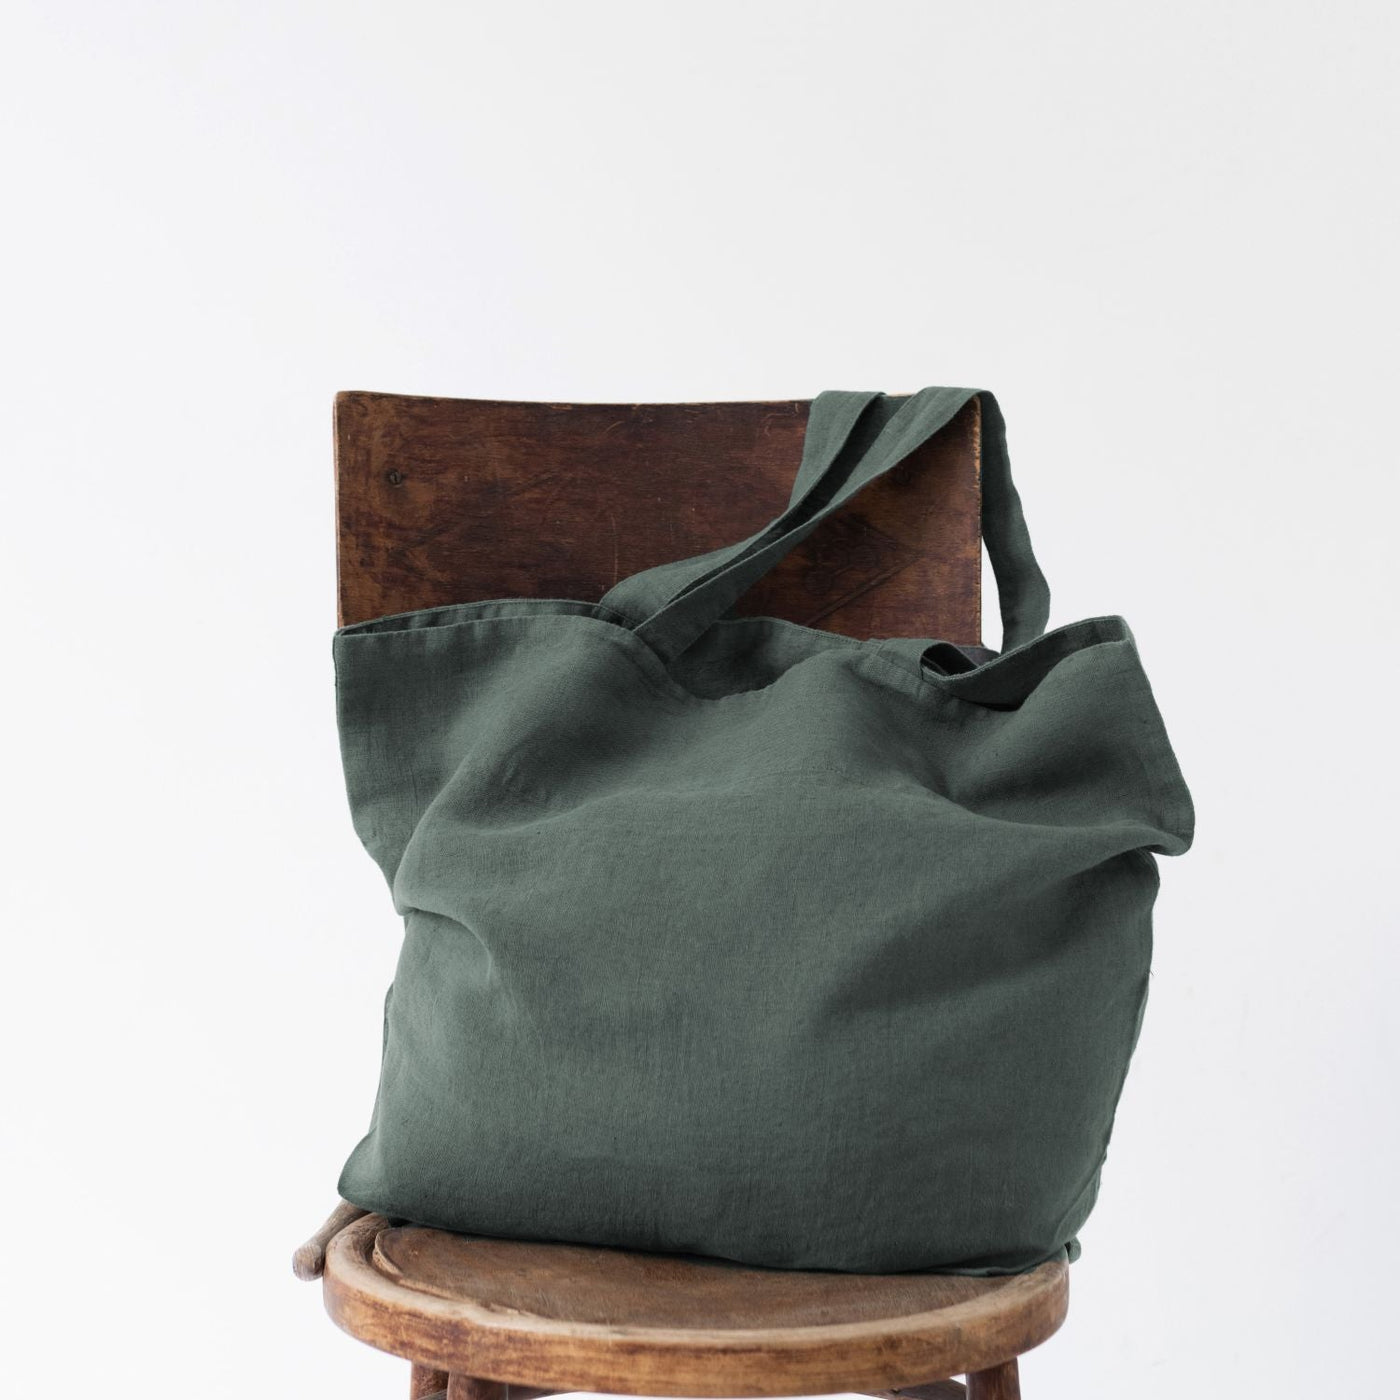 Forest Green Large Linen Bag